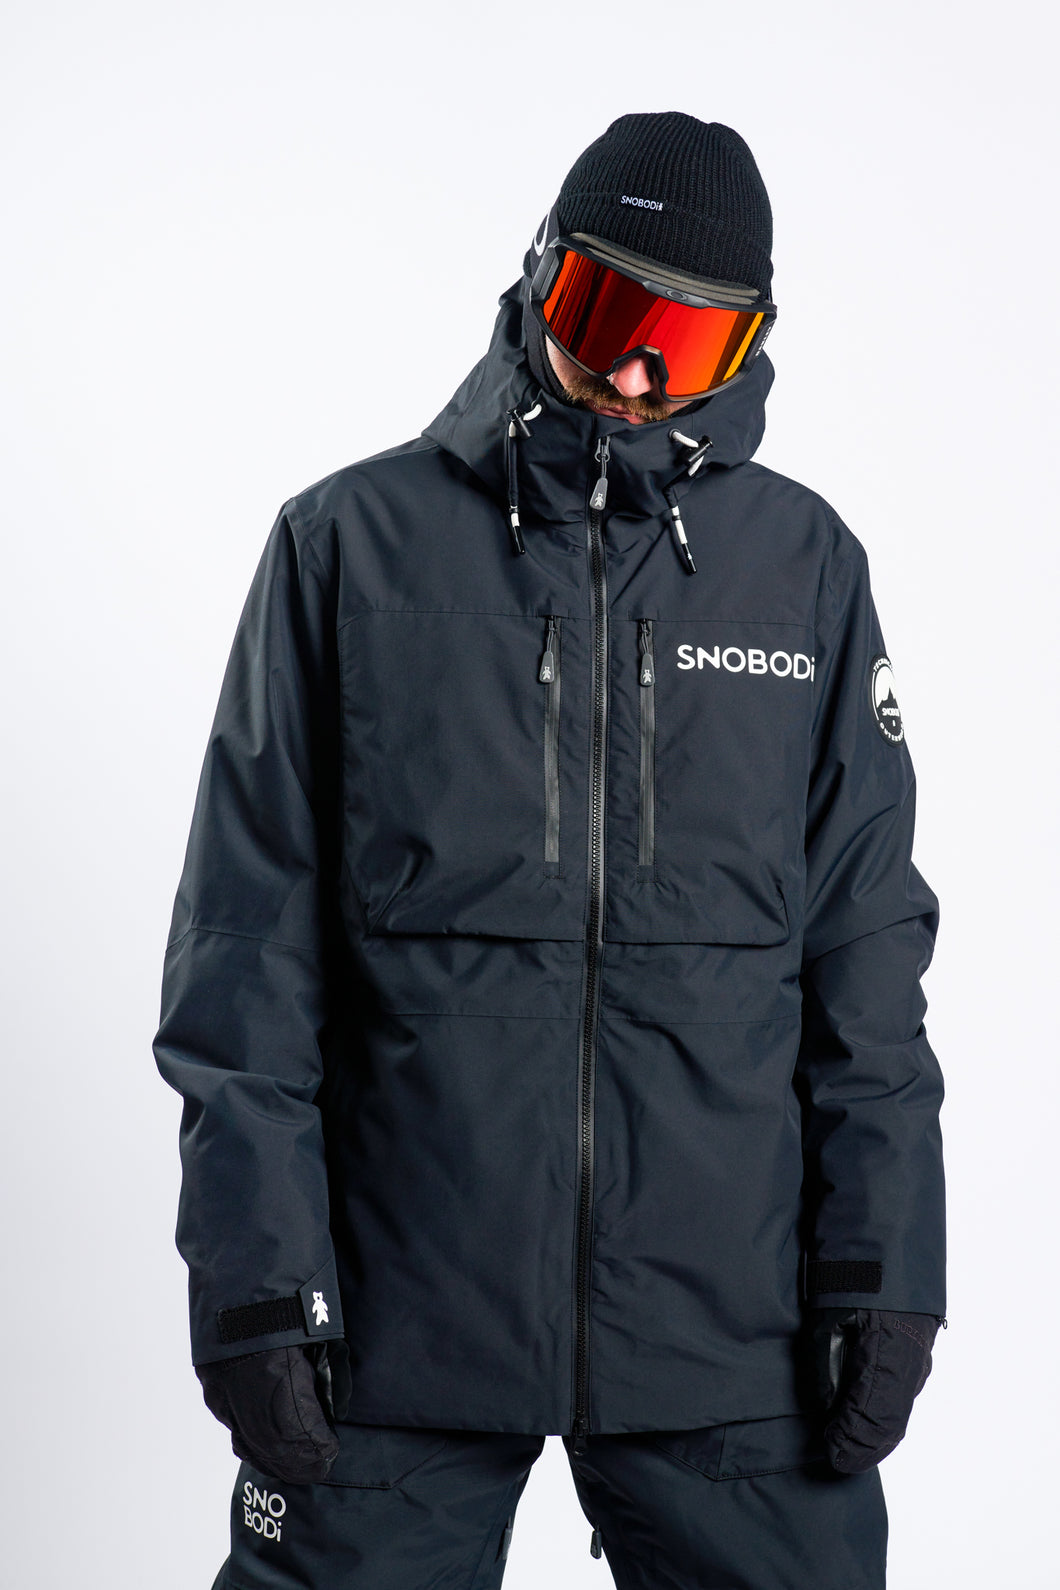 Snobodi Ridgeline Snow Jacket - Storm